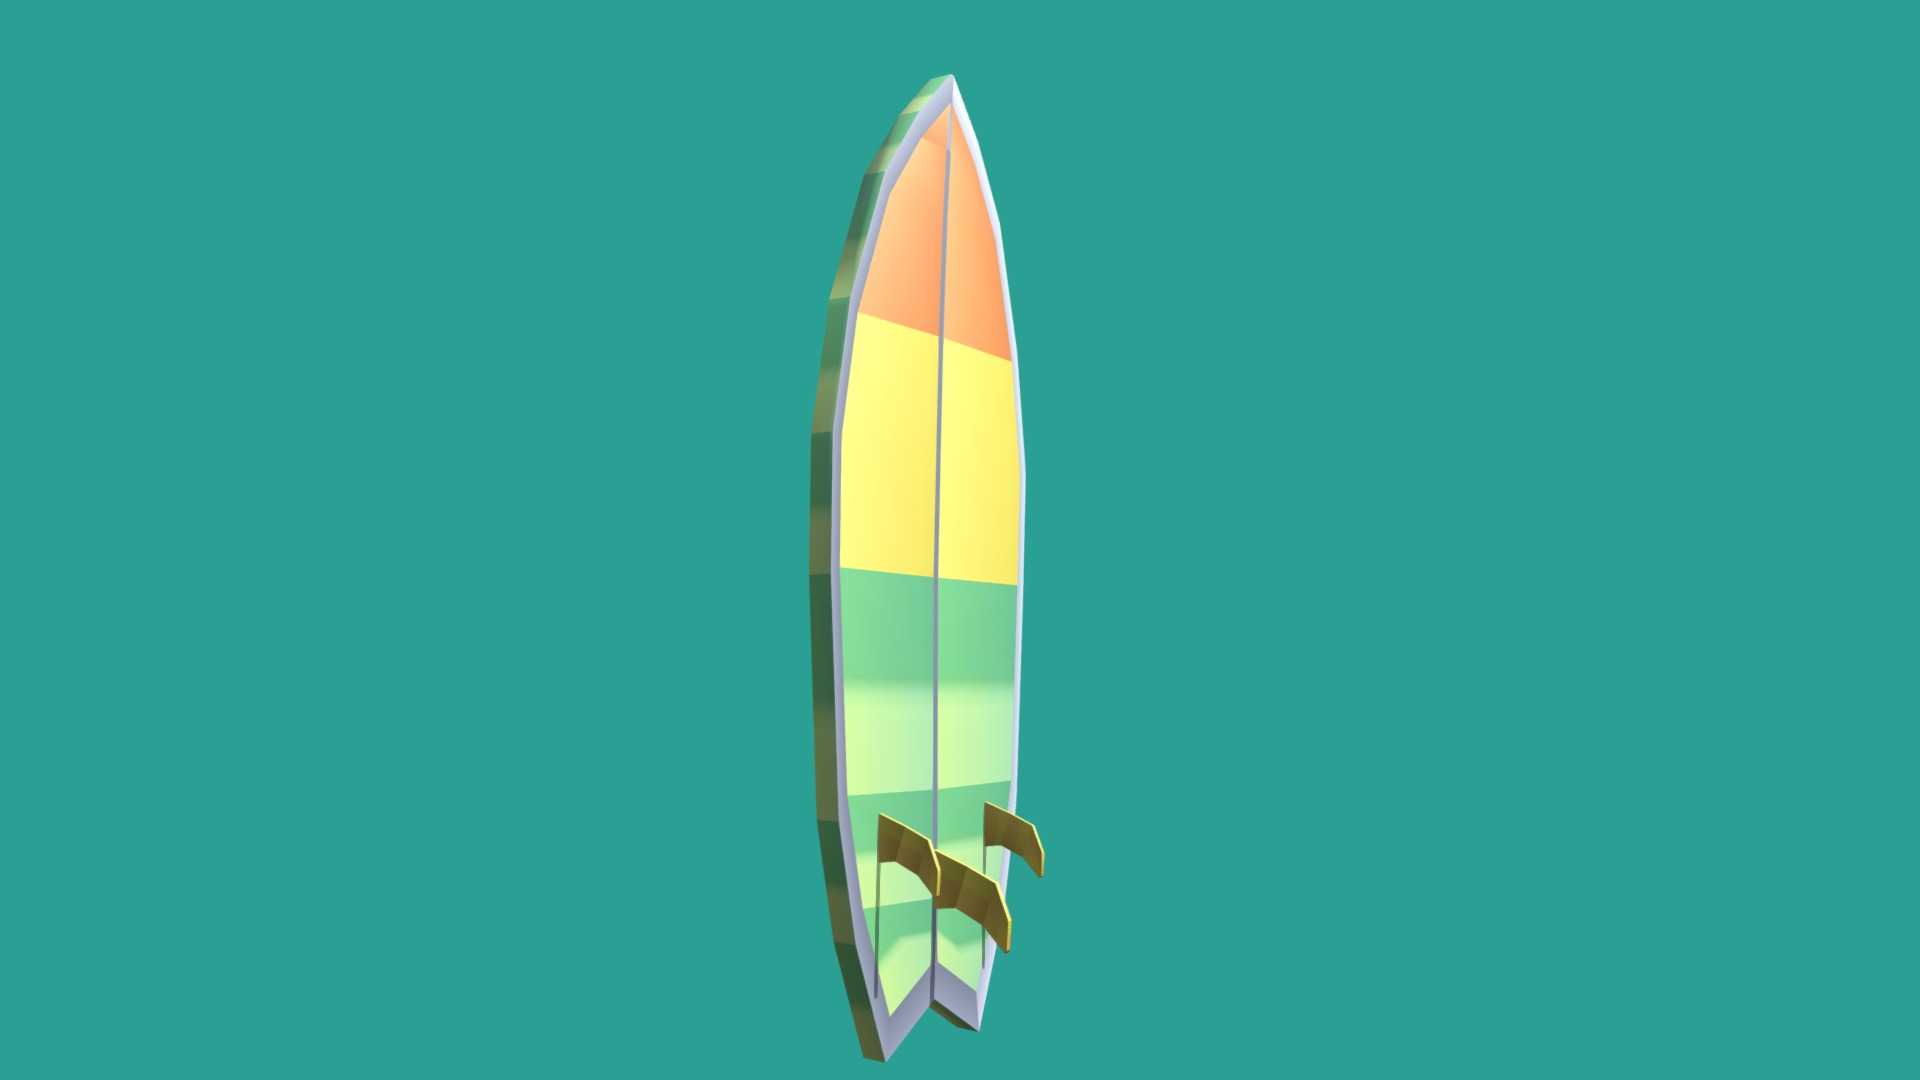 Tabla De Surf - Surfboard lowpoly